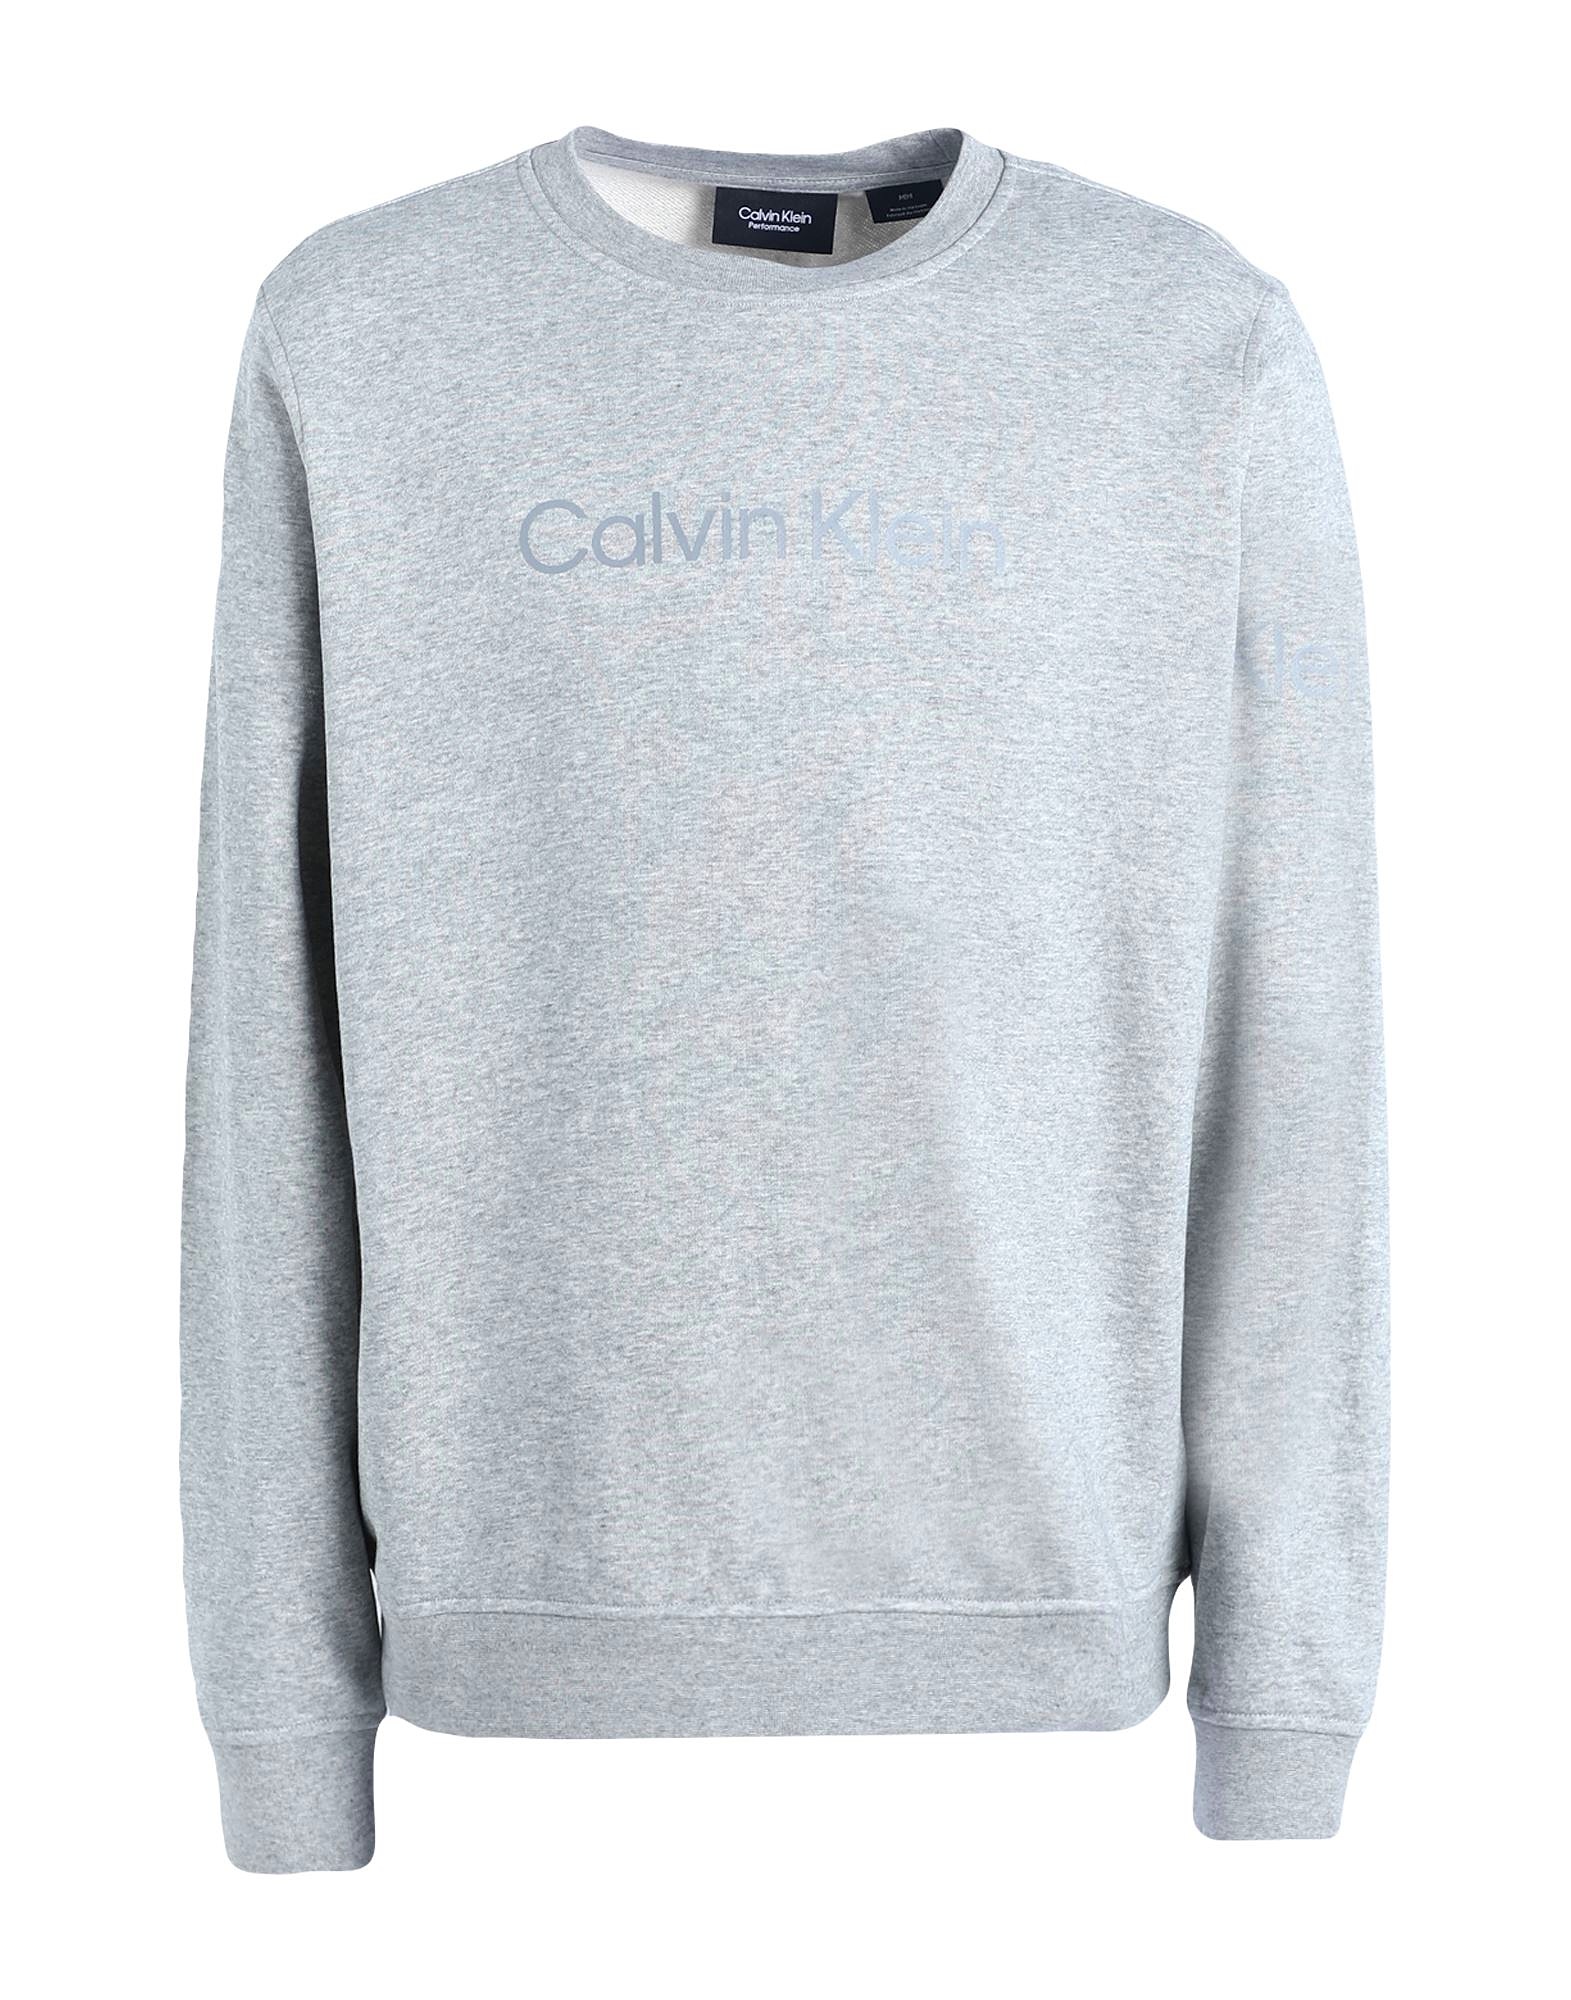 Stoop Lære behagelig Calvin Klein outlet | Spar op til 70% på Calvin Klein